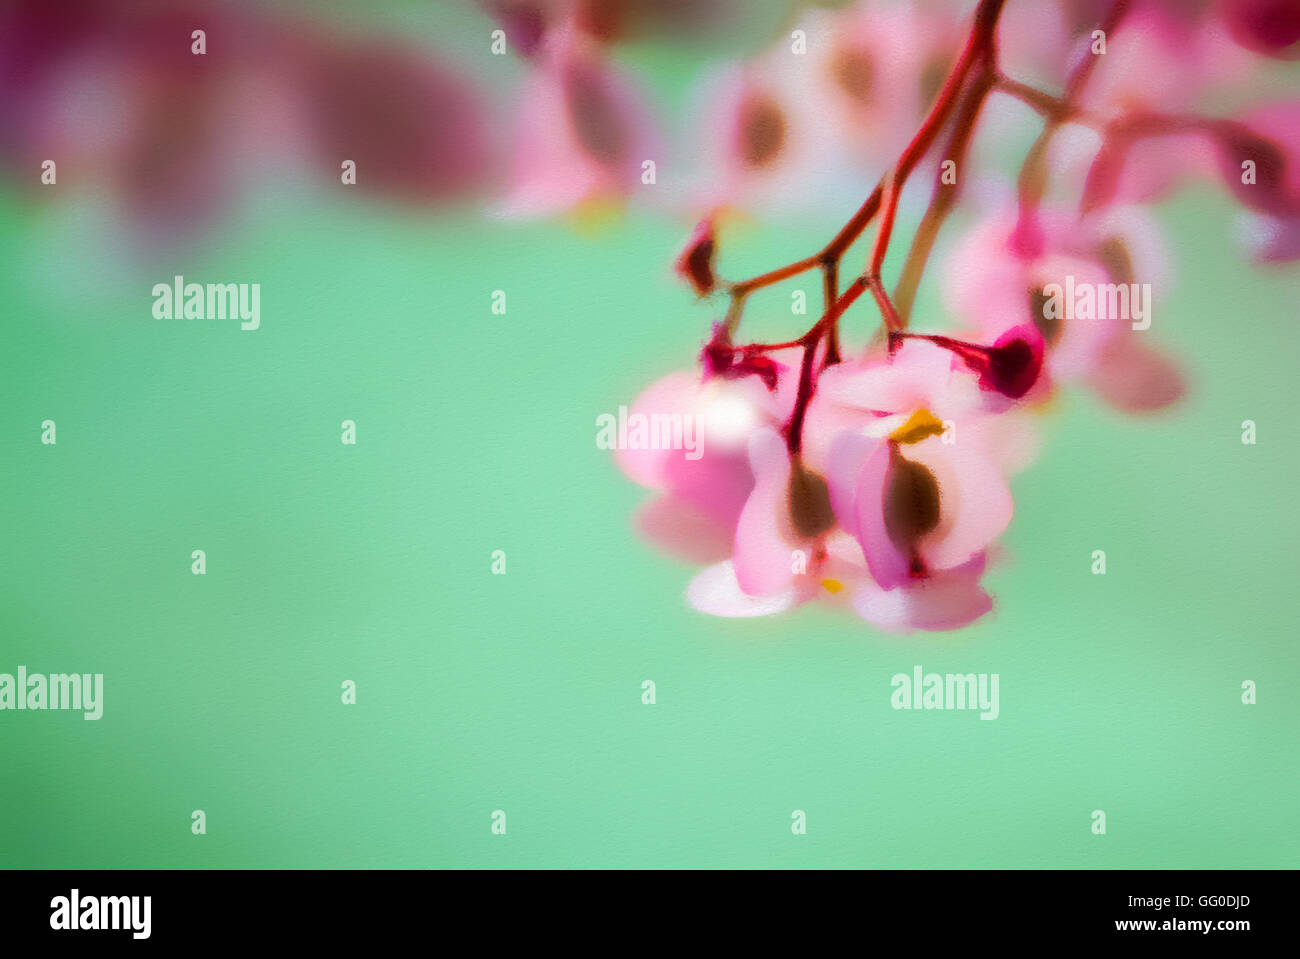 Pastellbild einer Begonie rosa Blume auf einem grünen Hintergrund. Stockfoto